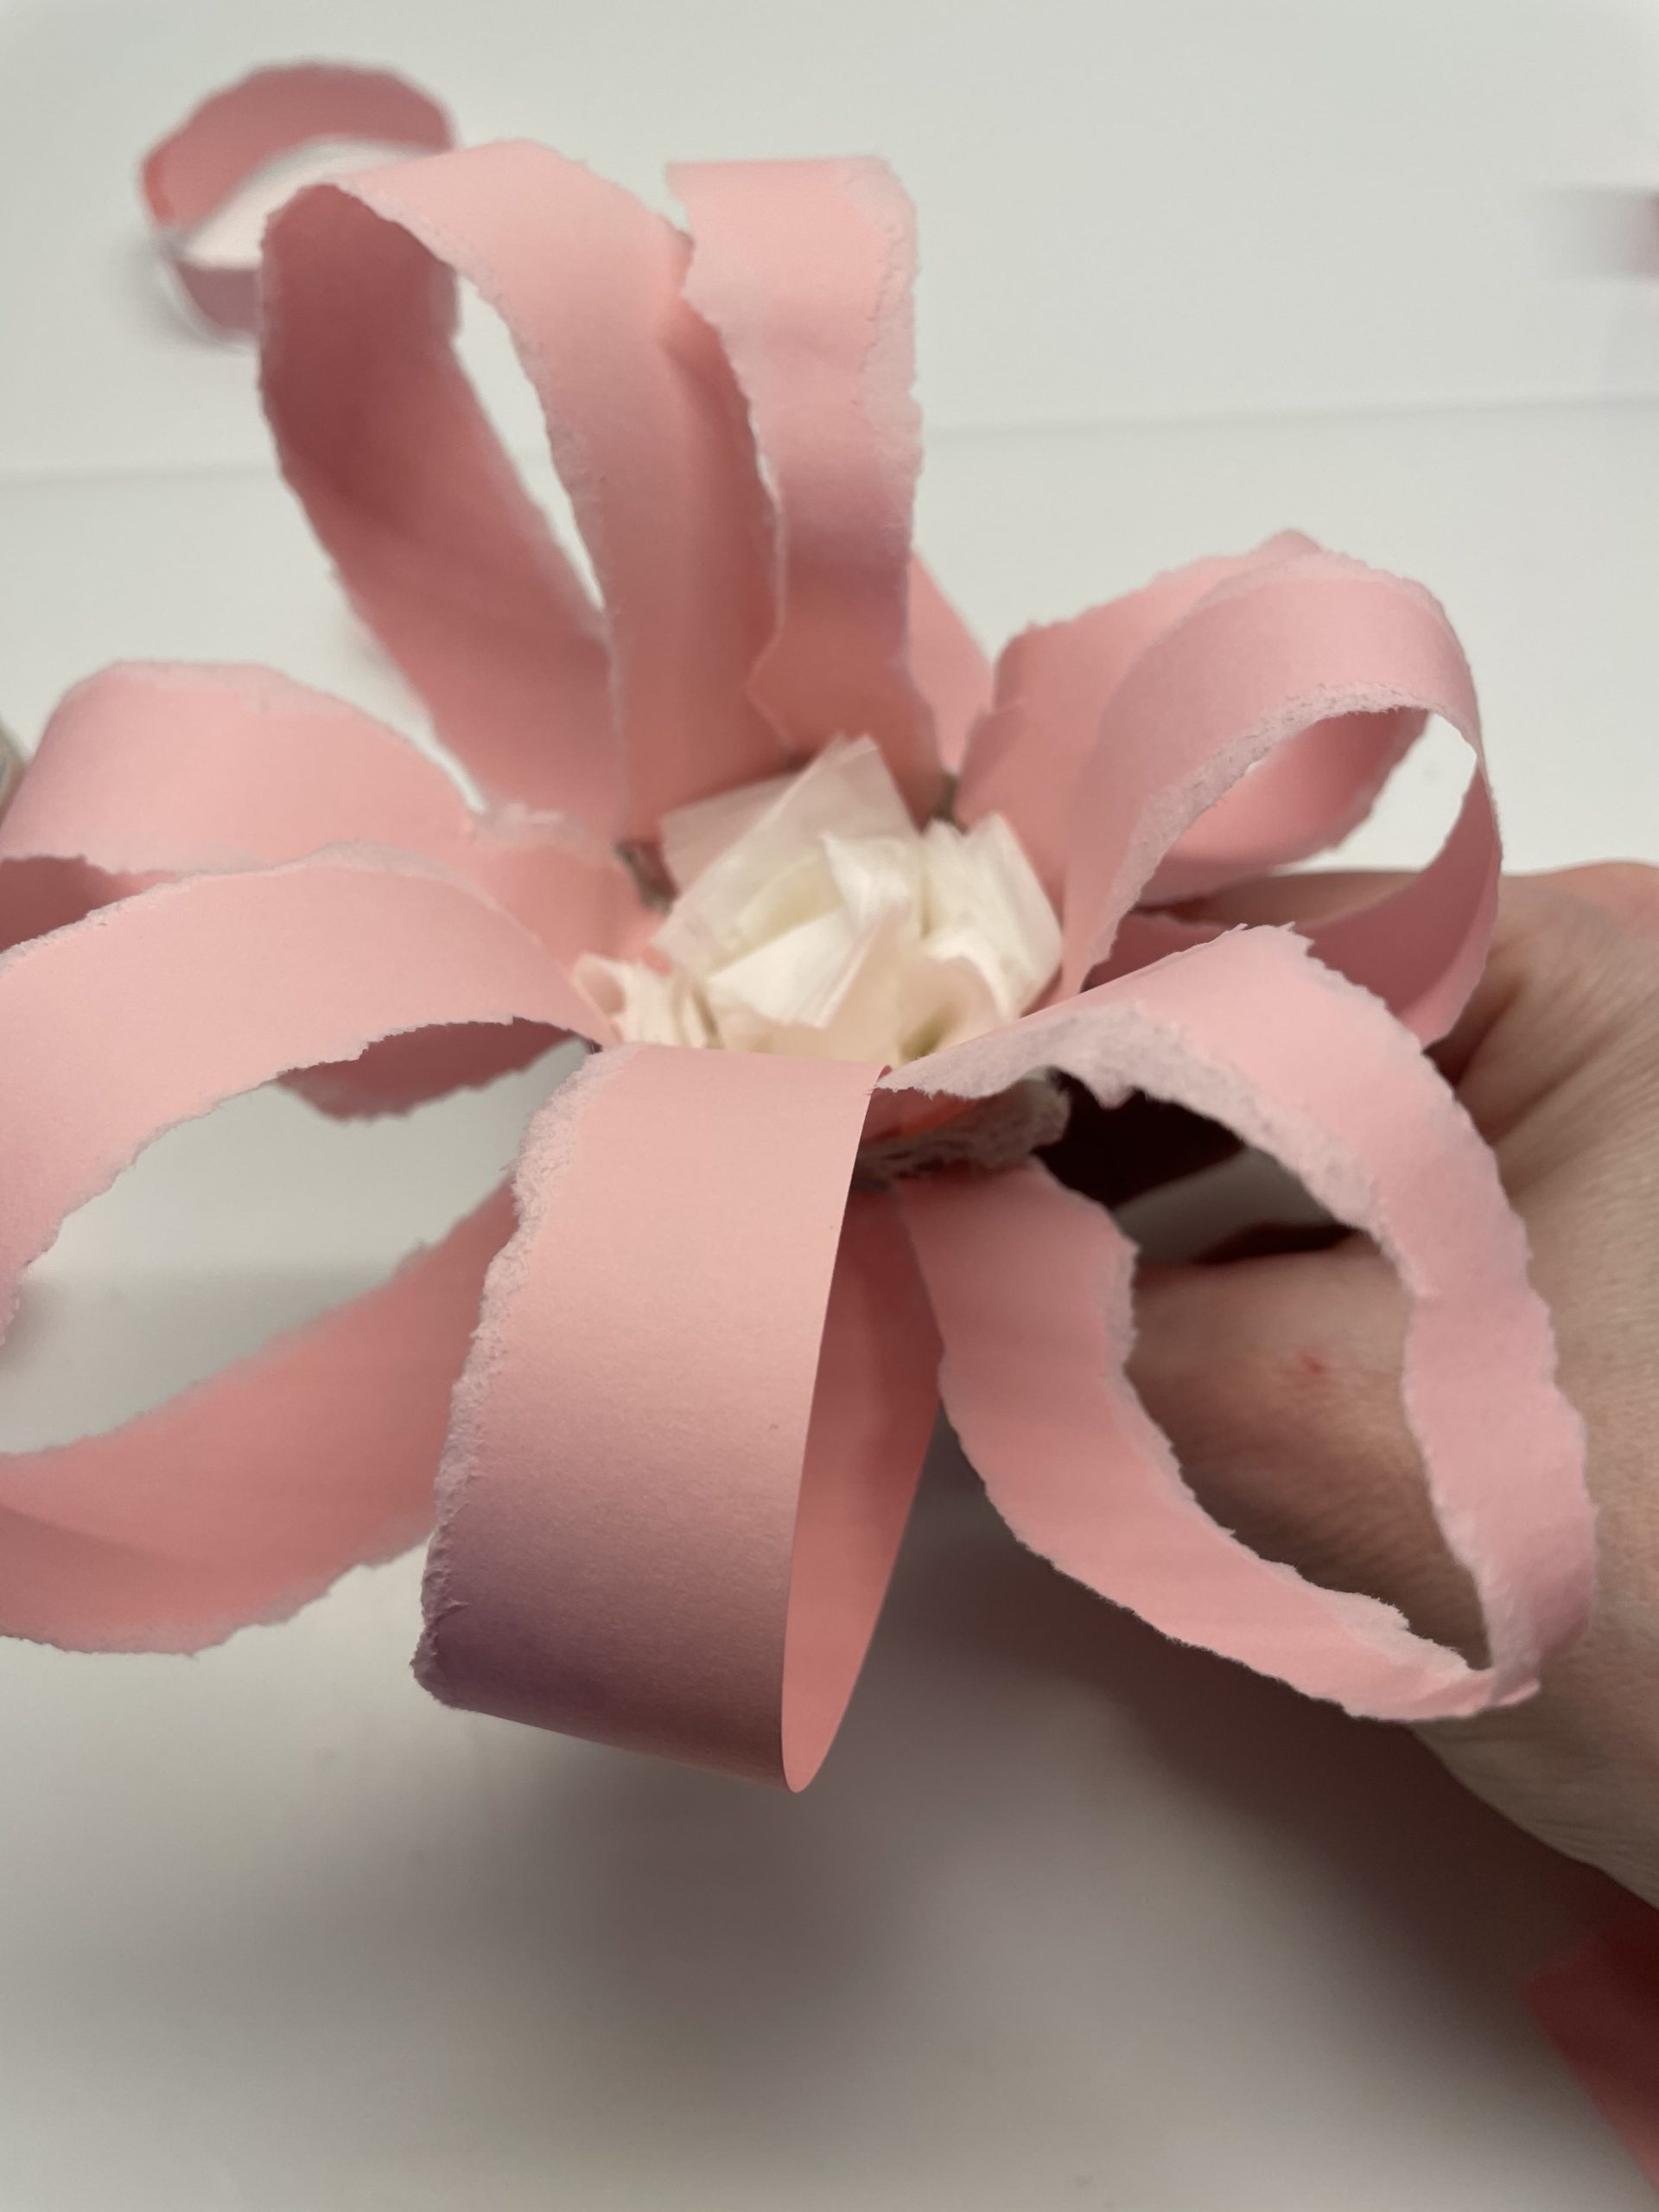 Bild zum Schritt 2 für das Bastel- und DIY-Abenteuer für Kinder: 'Bastelt euch diese "Gerissene Papier-Blume aus Eierkarton" bis...'